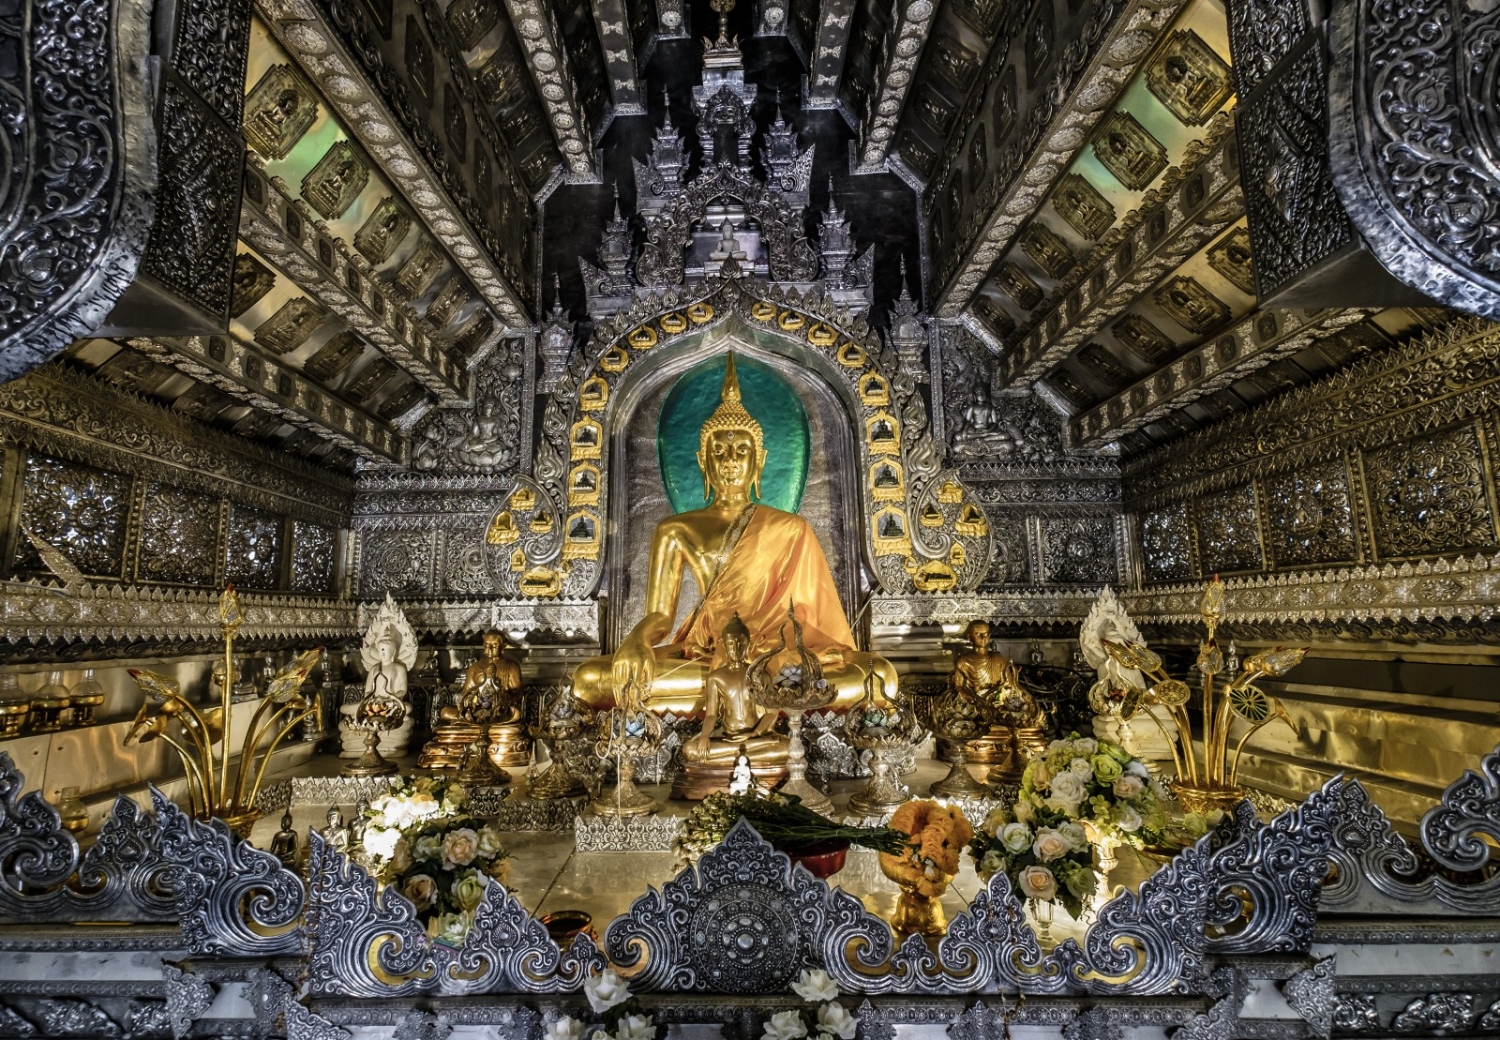 Tour du lịch Thái Lan - Bangkok - Pattaya (5 ngày - 4 đêm)